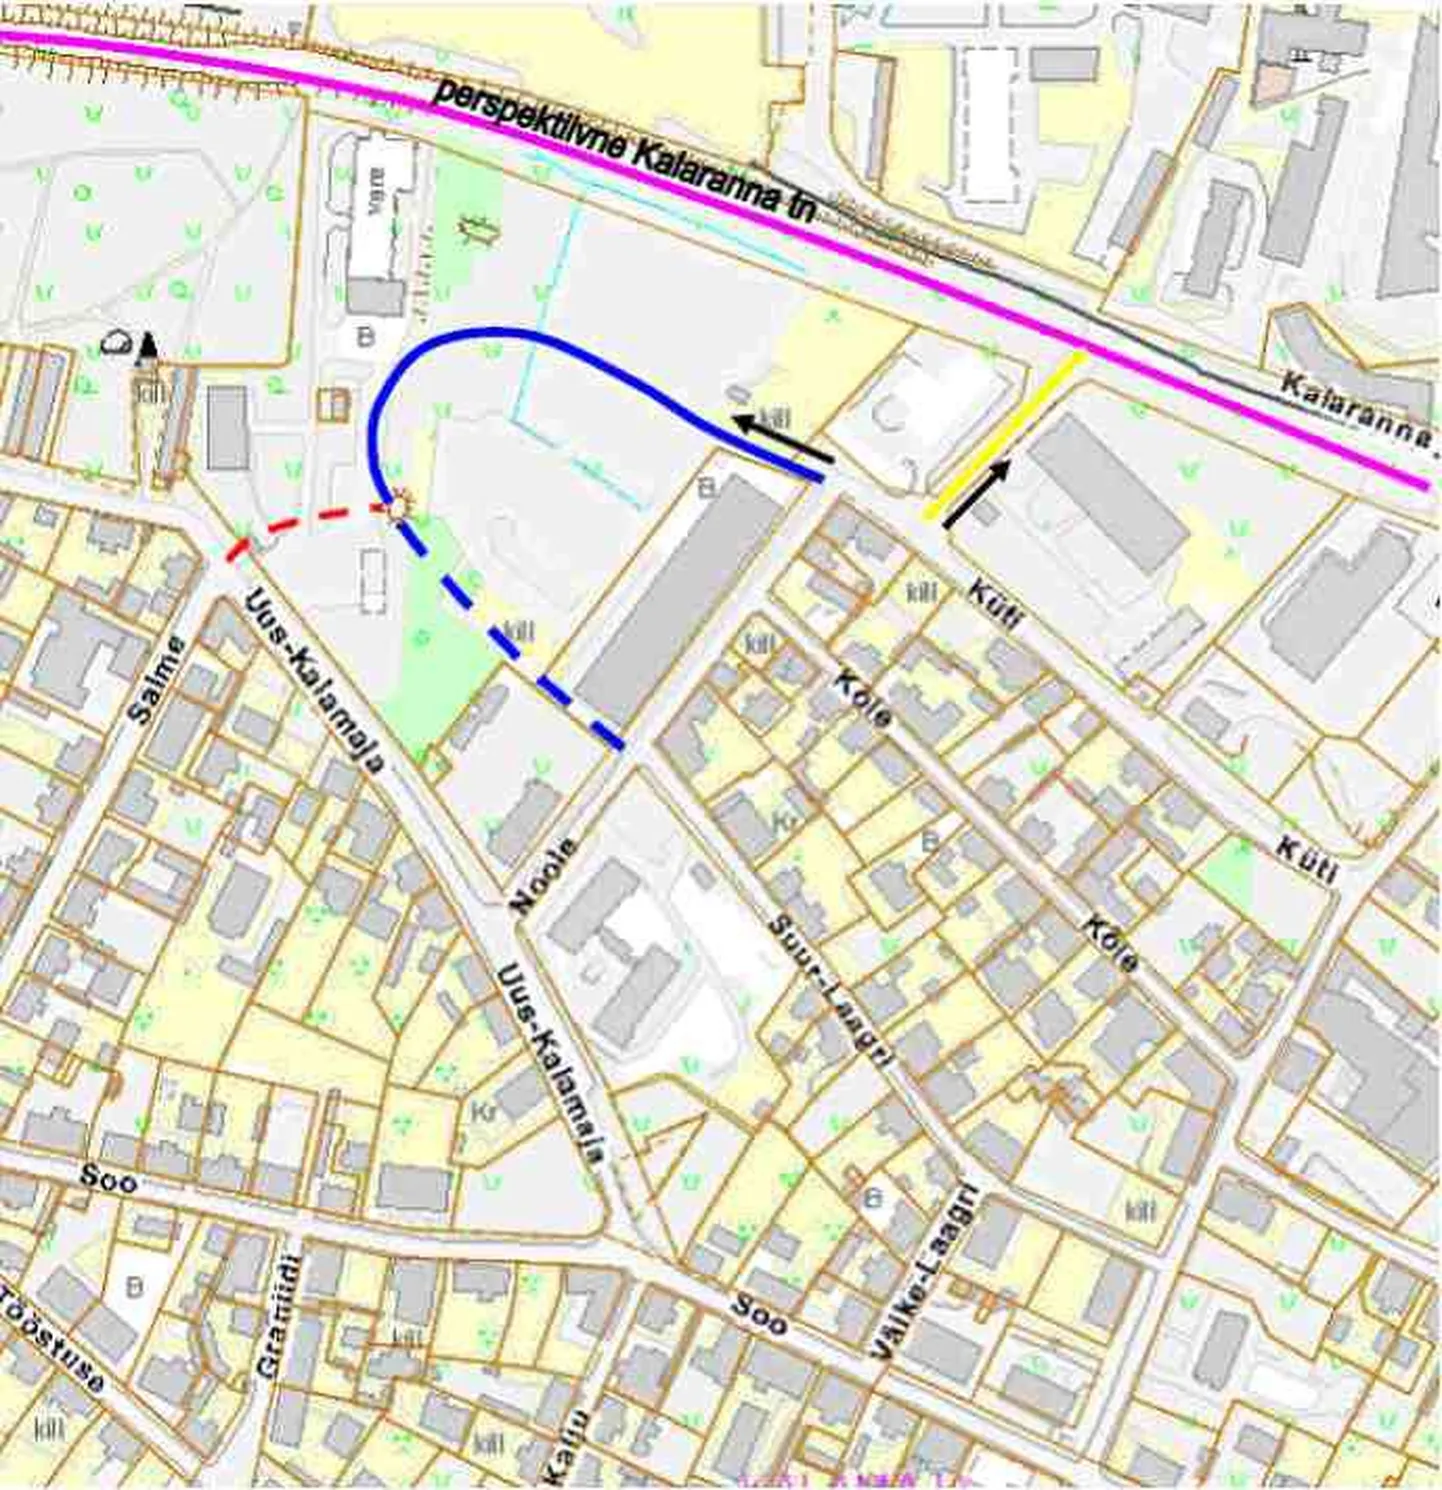 Vibu tänav on skeemil märgitud sinise, Oda tänav kollase joonega. Punase katkendjoonega on tähistatud Salme tänava pikendus.